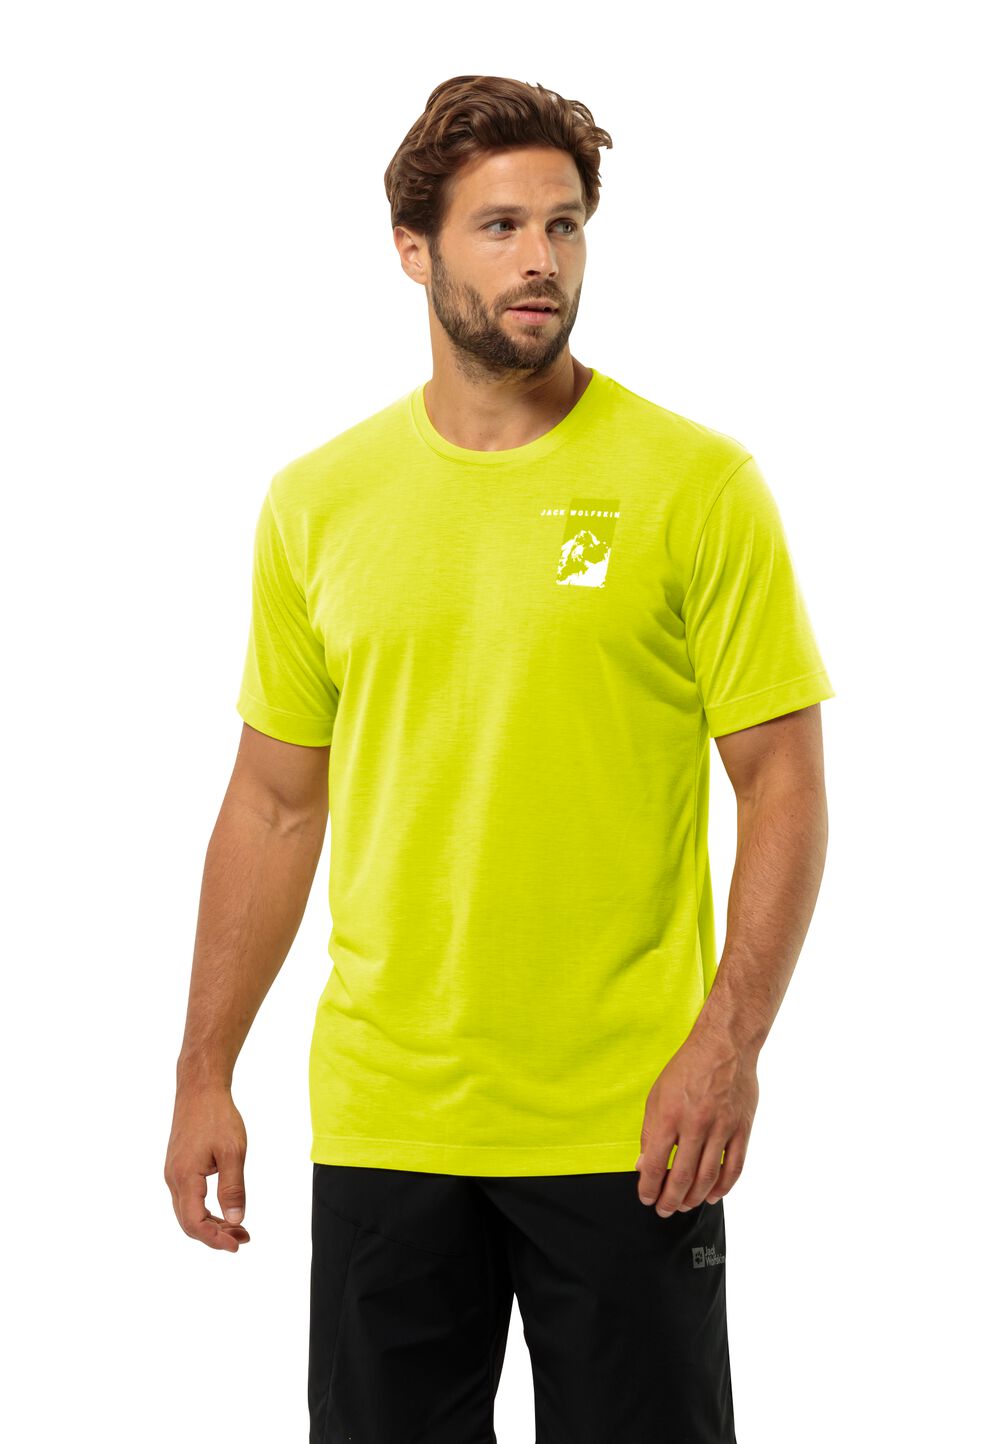 Jack Wolfskin Vonnan S S Graphic T-Shirt Men Functioneel shirt Heren XXL oranje firefly